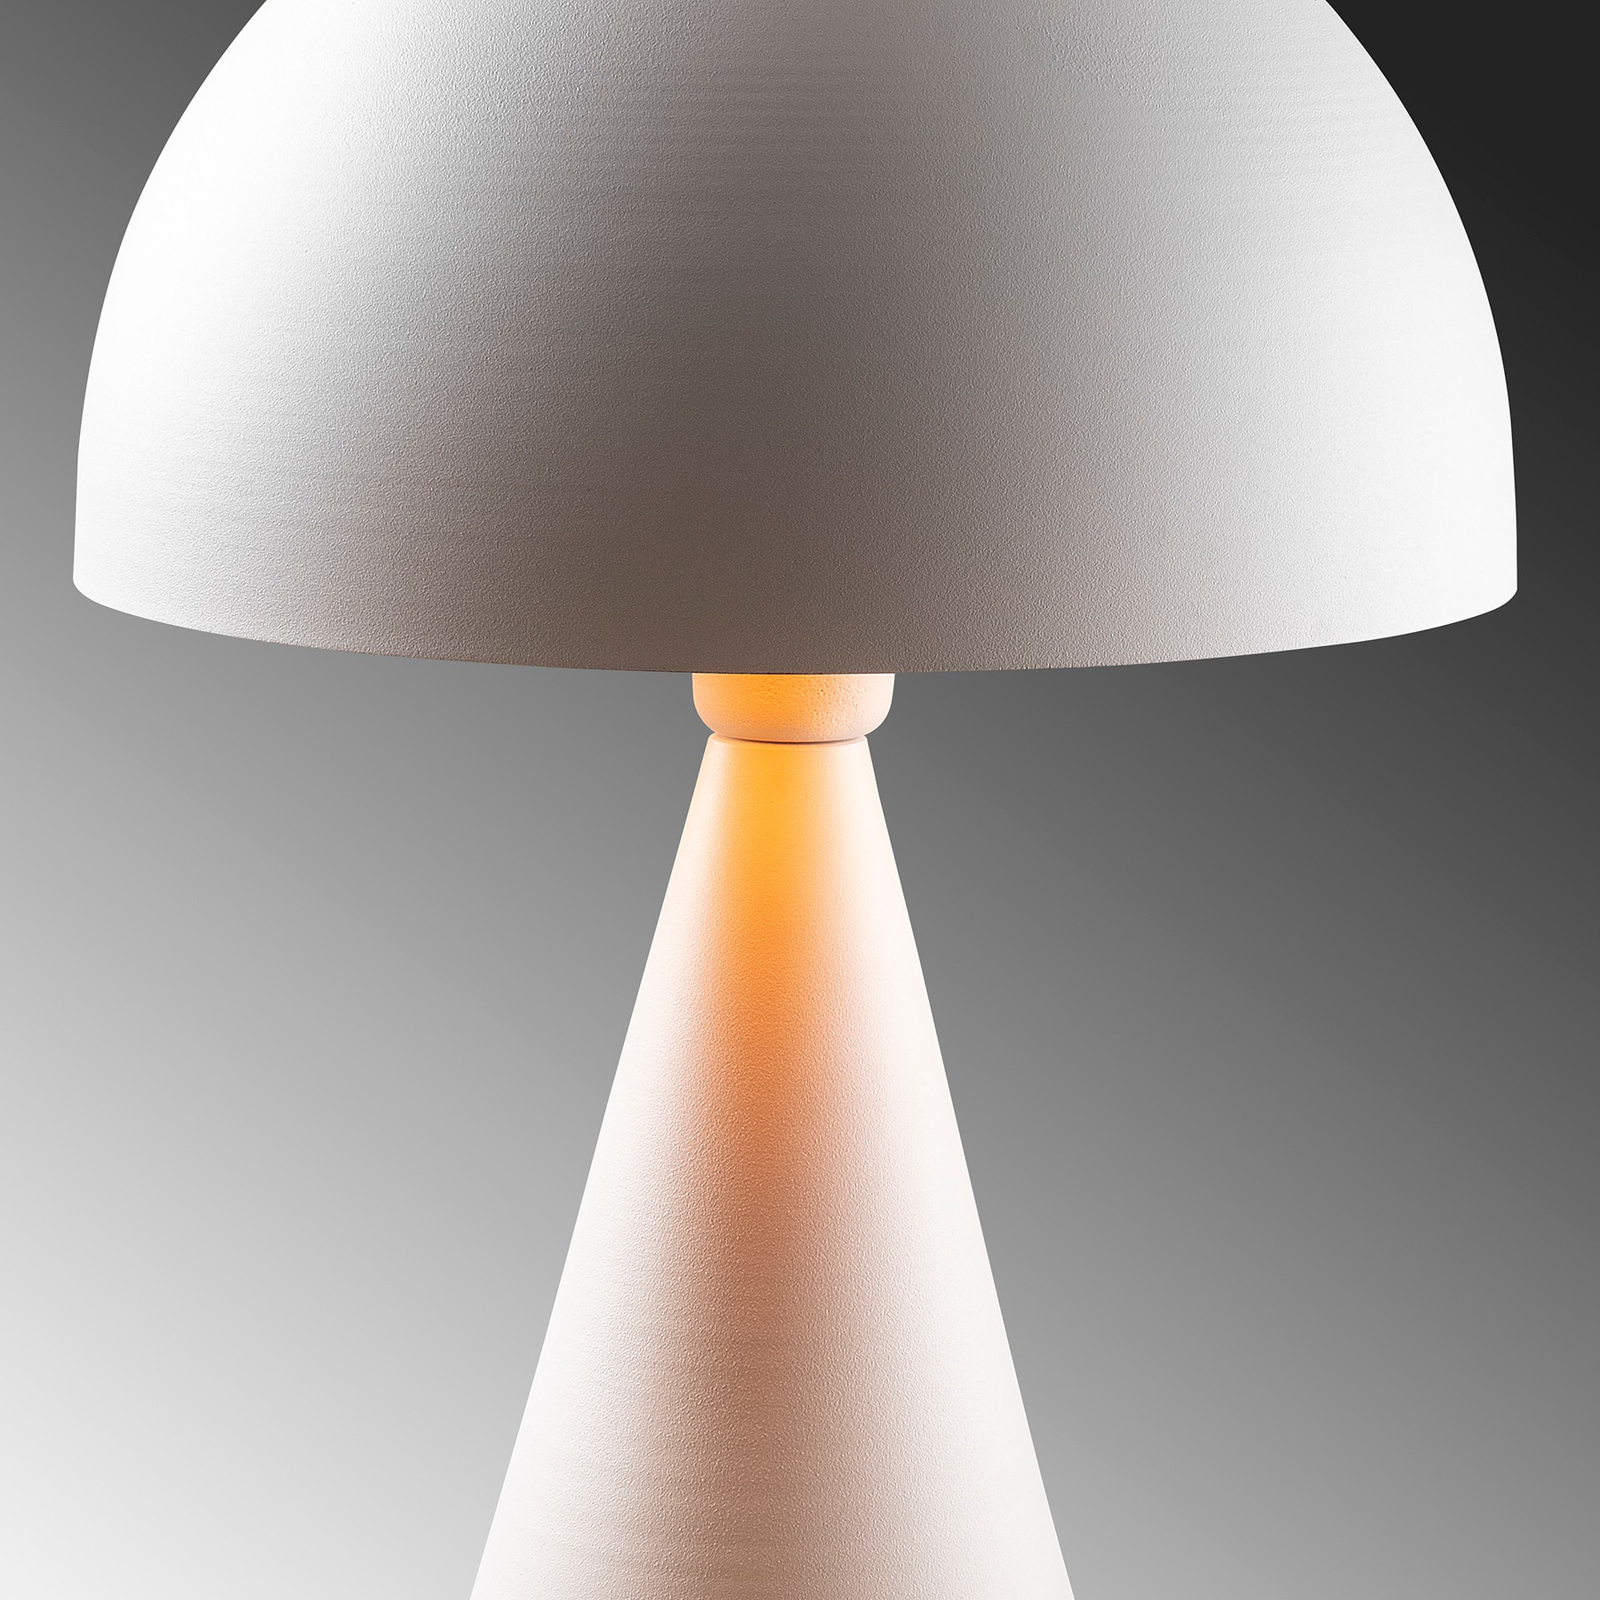 Namizna svetilka Dodo 5052, višina 52 cm, bela